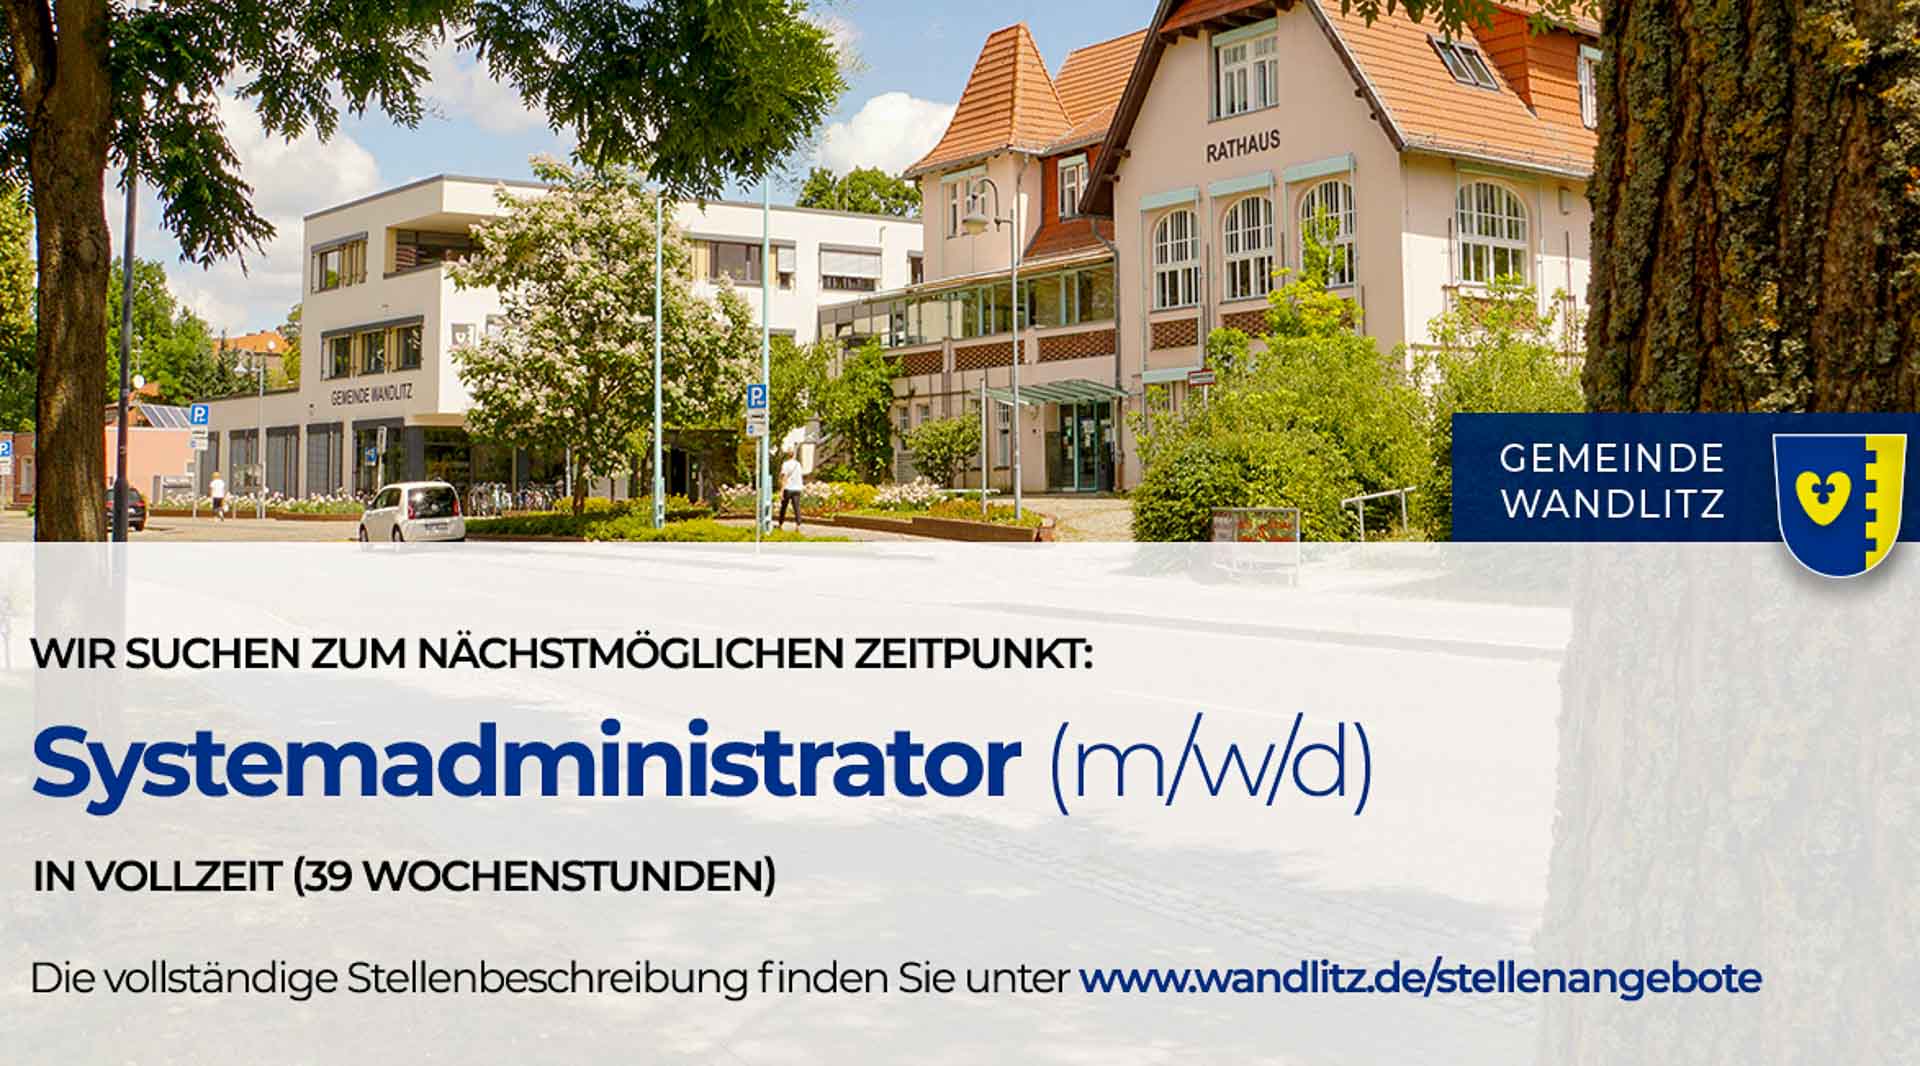 Systemadministrator/in (m/w/d) in der Gemeinde WandlitzSystemadministrator/in (m/w/d) in der Gemeinde Wandlitz